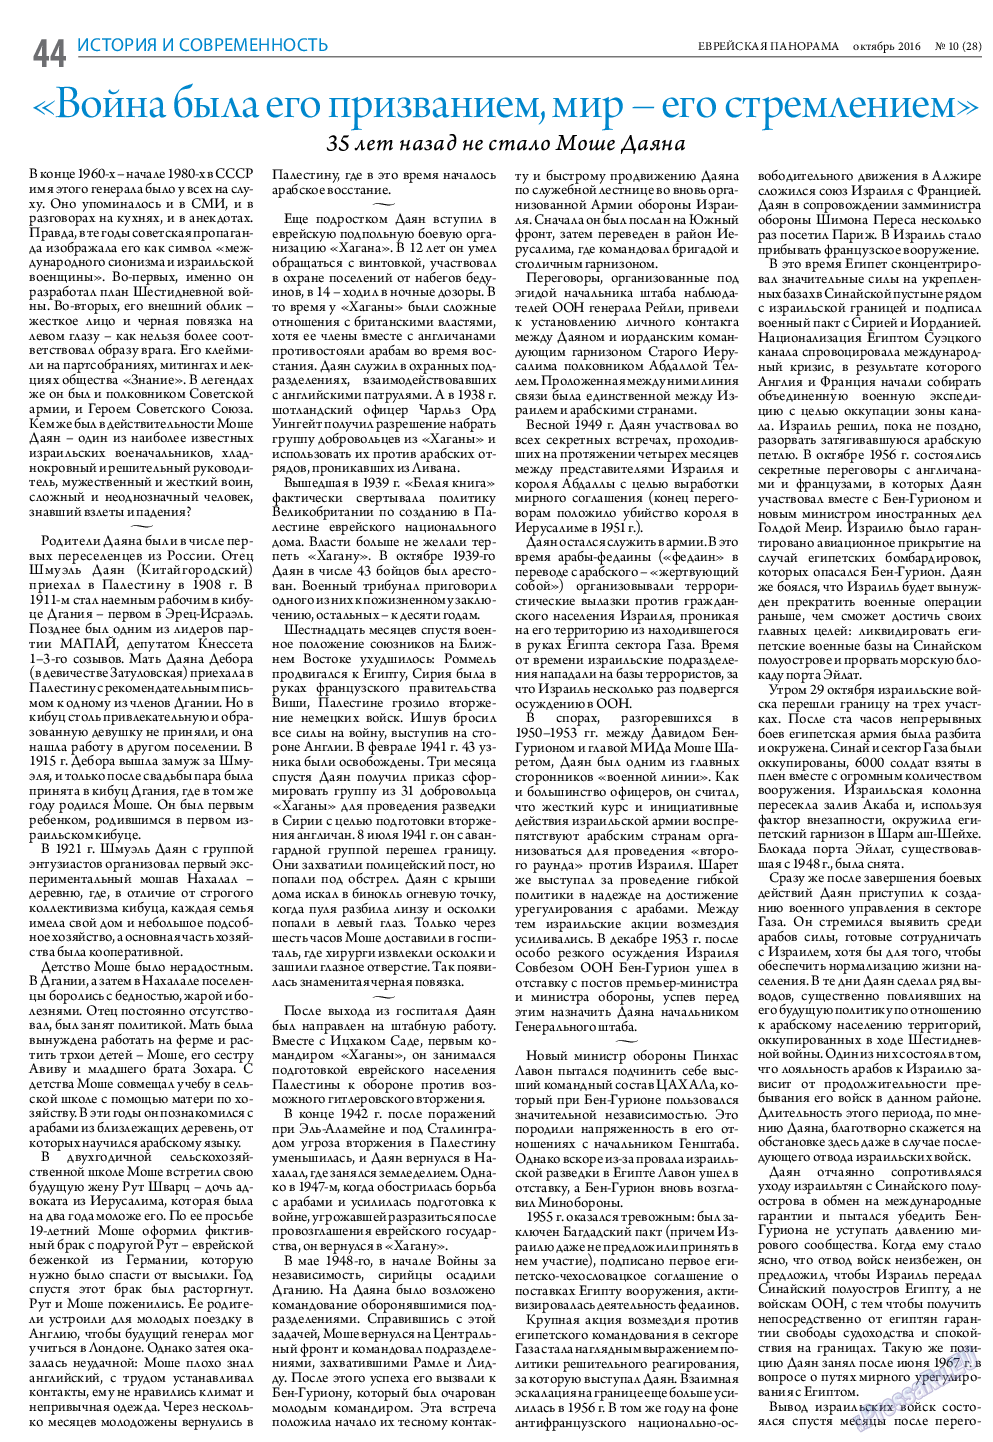 Еврейская панорама (газета). 2016 год, номер 10, стр. 44